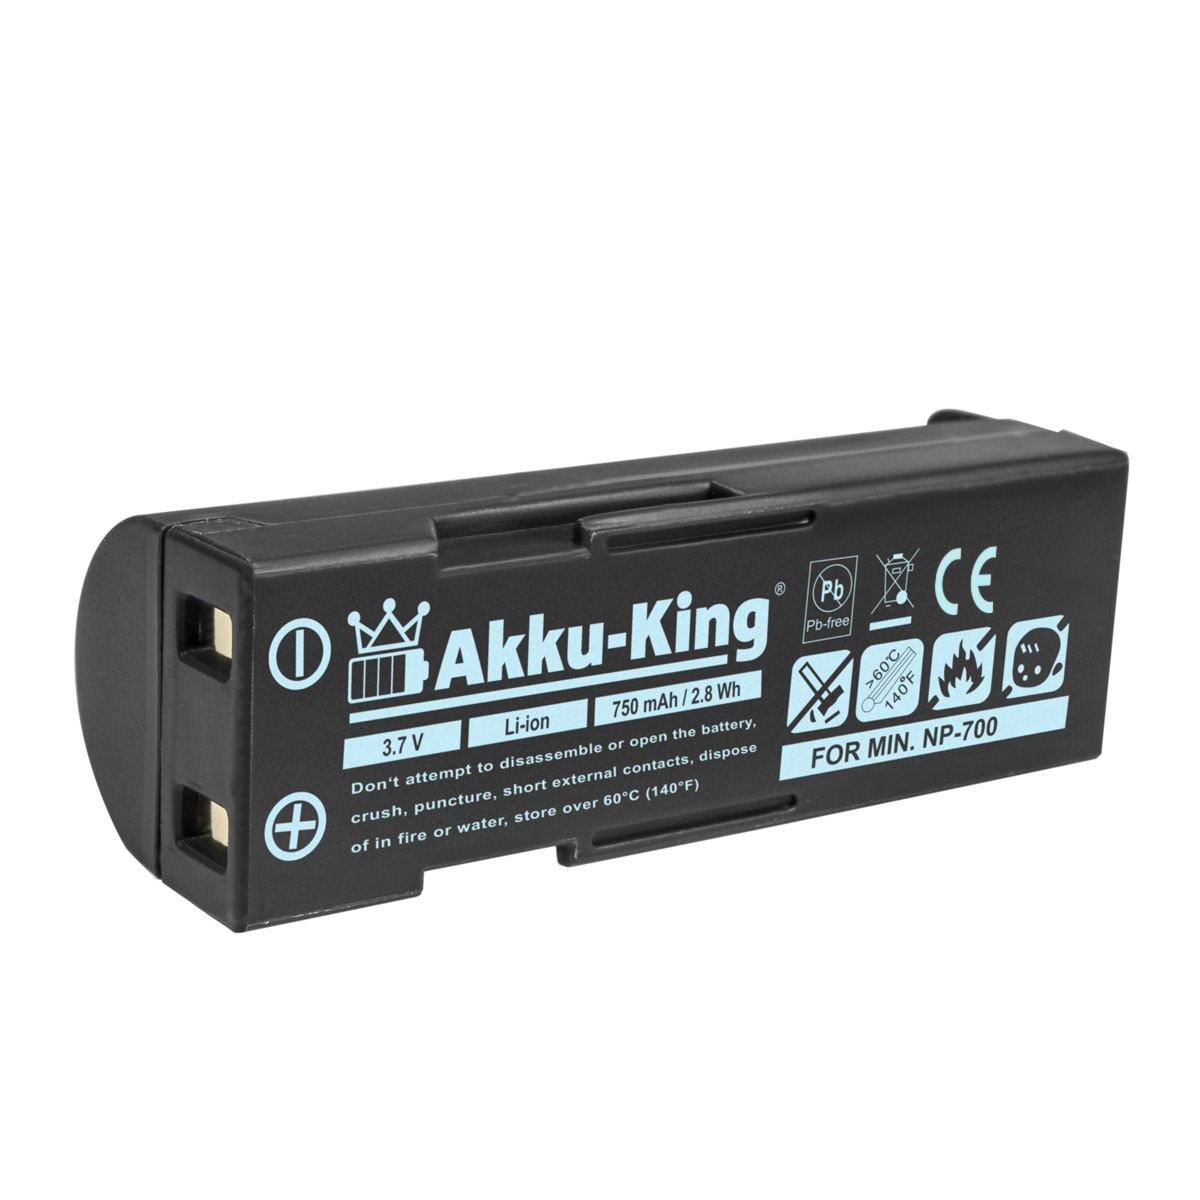 AKKU-KING Akku kompatibel mit Volt, D-LI72 Li-Ion Kamera-Akku, 750mAh 3.7 Pentax